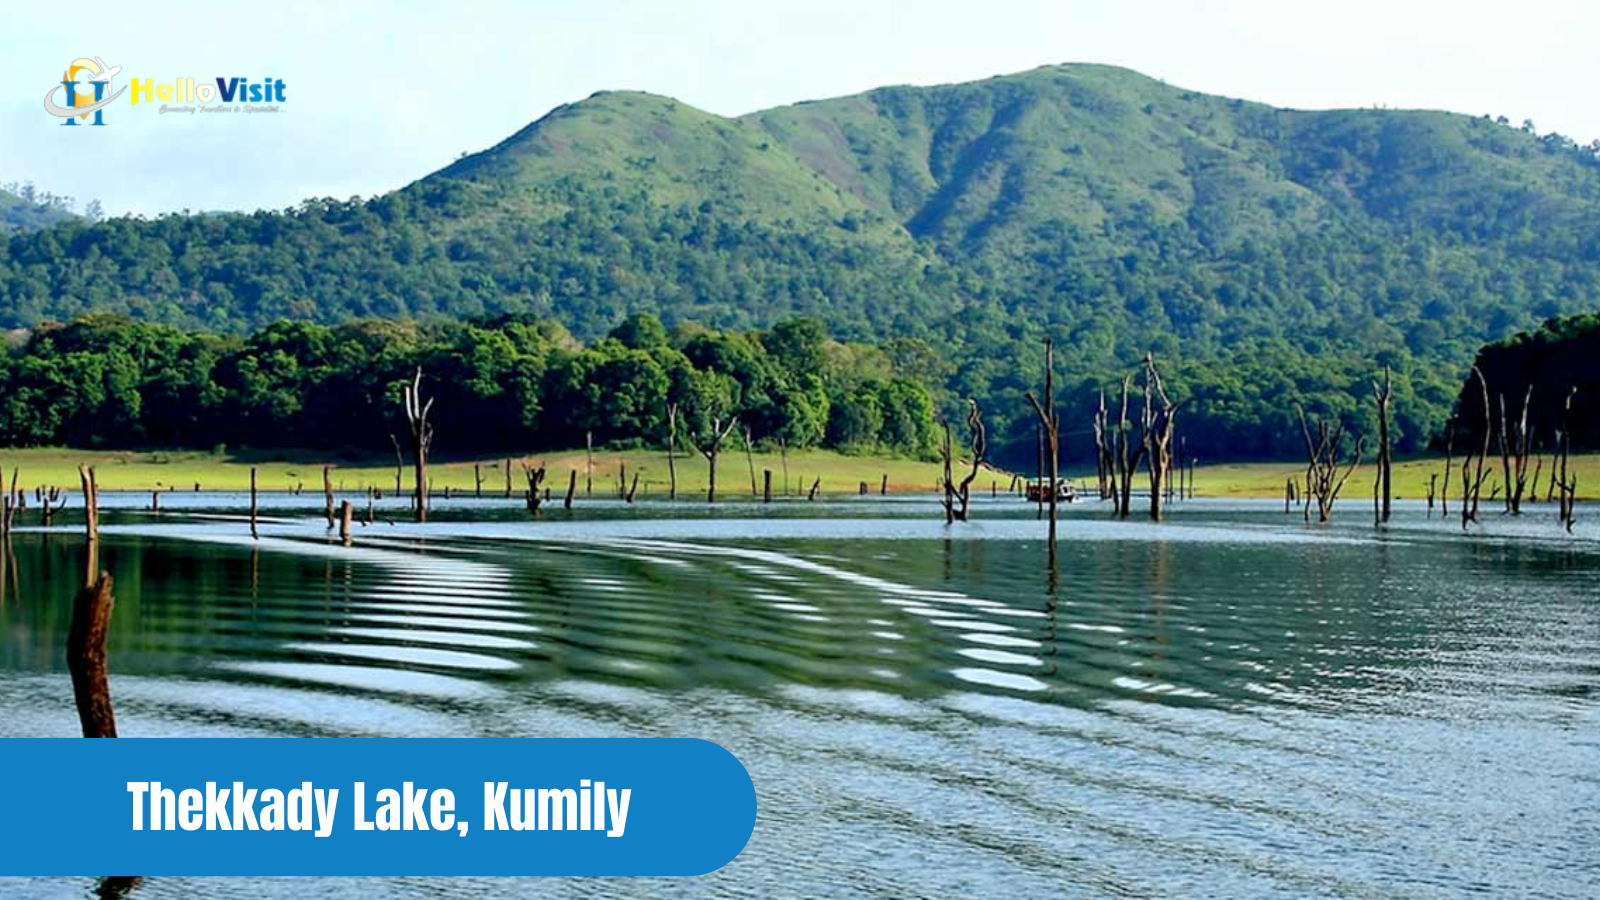 Thekkady Lake, Kumily